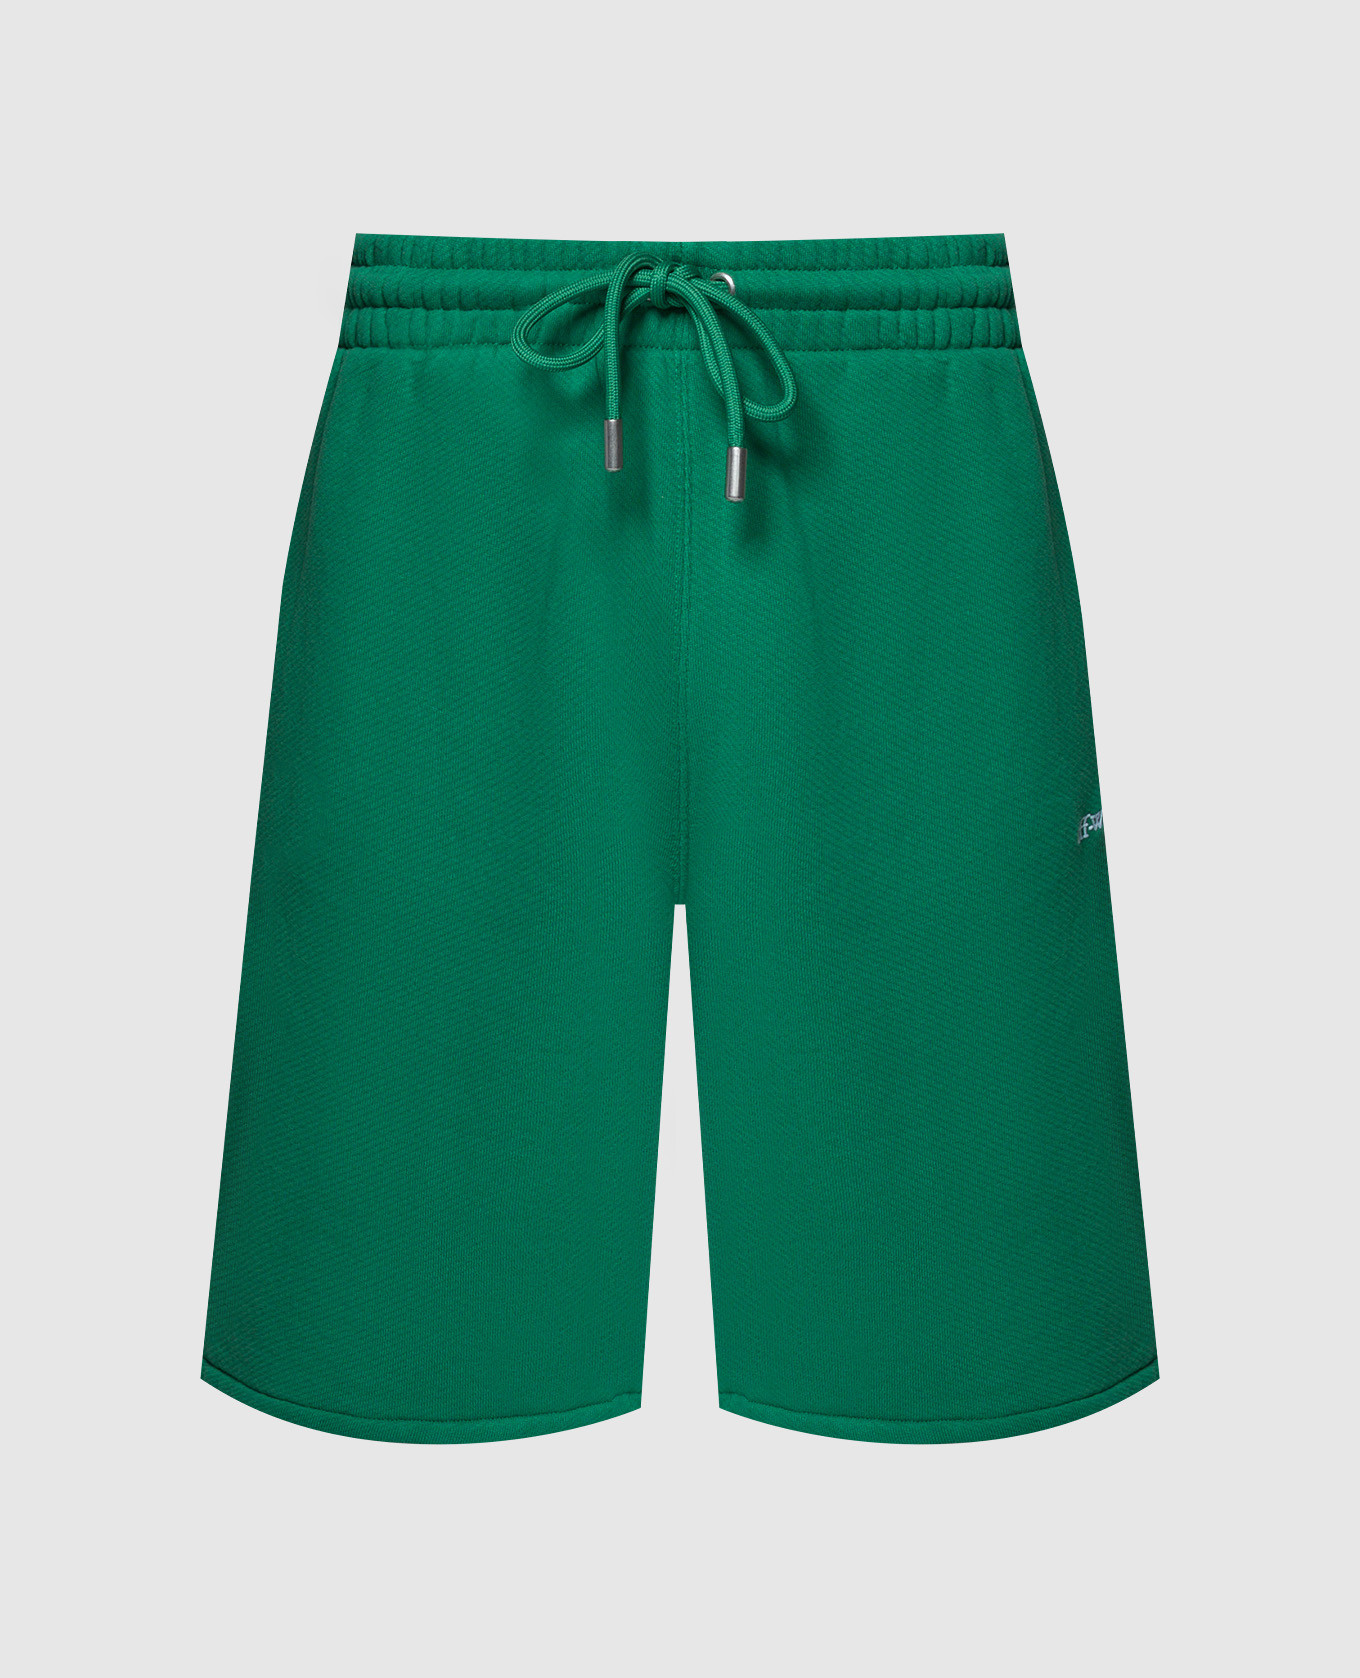 Зеленые шорты с вышивкой Bandana Arrow